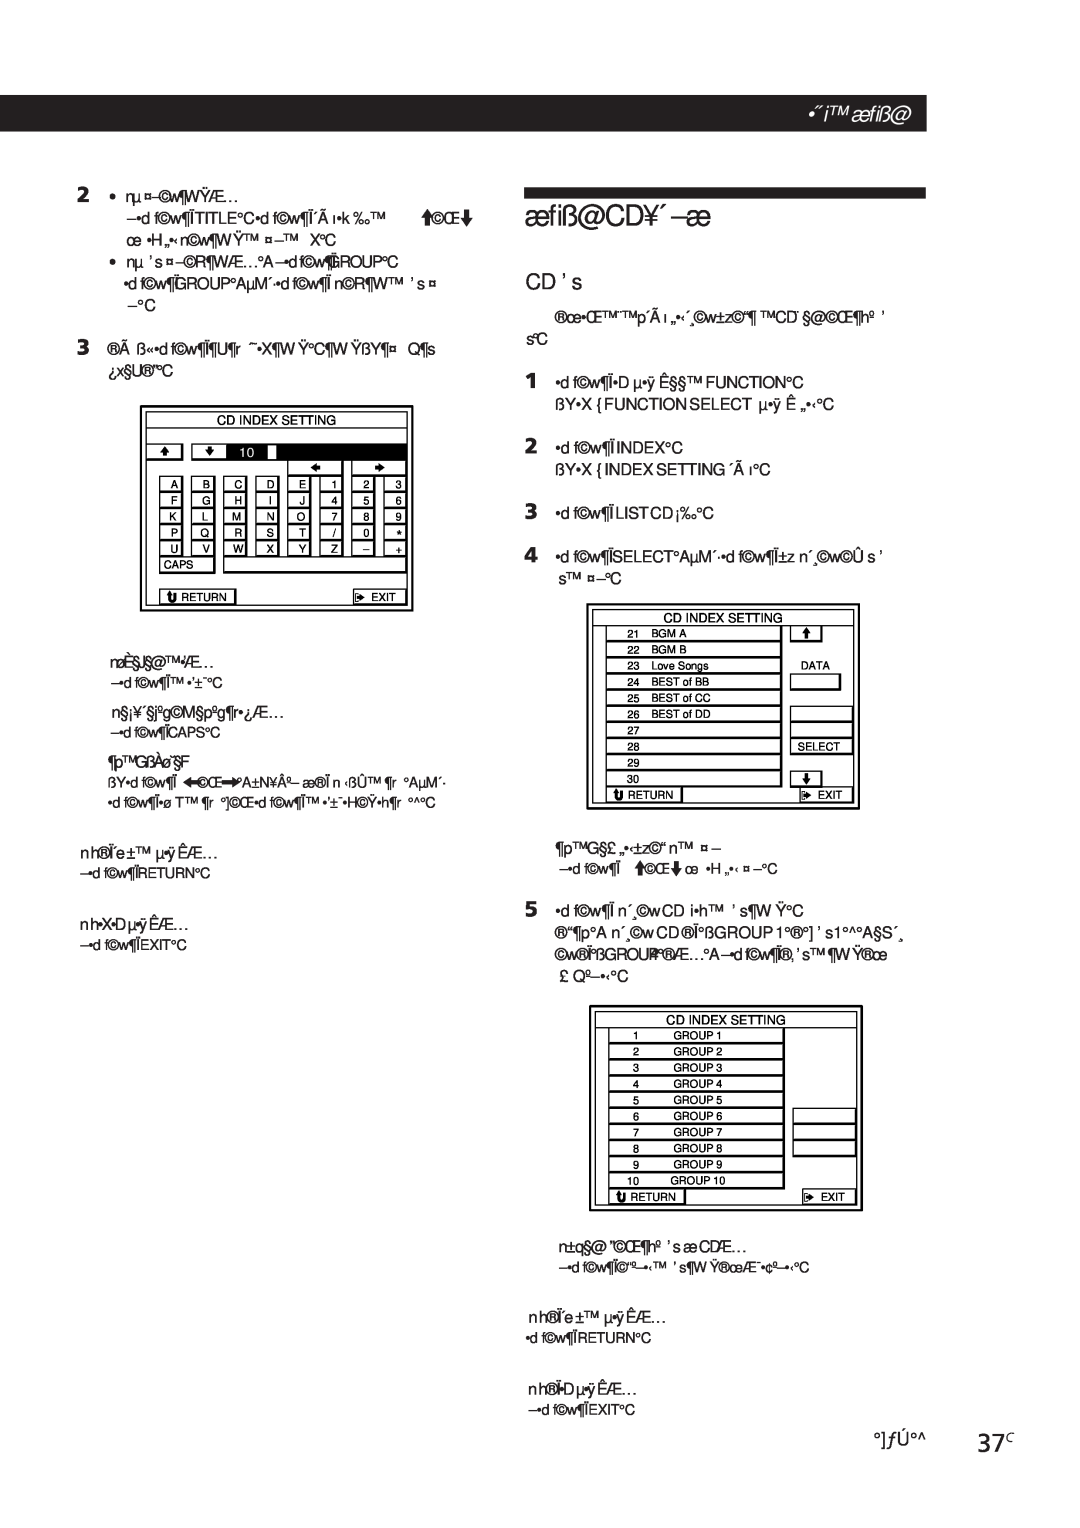 Sony STR-DE905G, STR-DE805G manual æﬁß@CD¥´ –æ, •˝ i æﬁß@, CD ’ s, ƒÚ^ 37C 